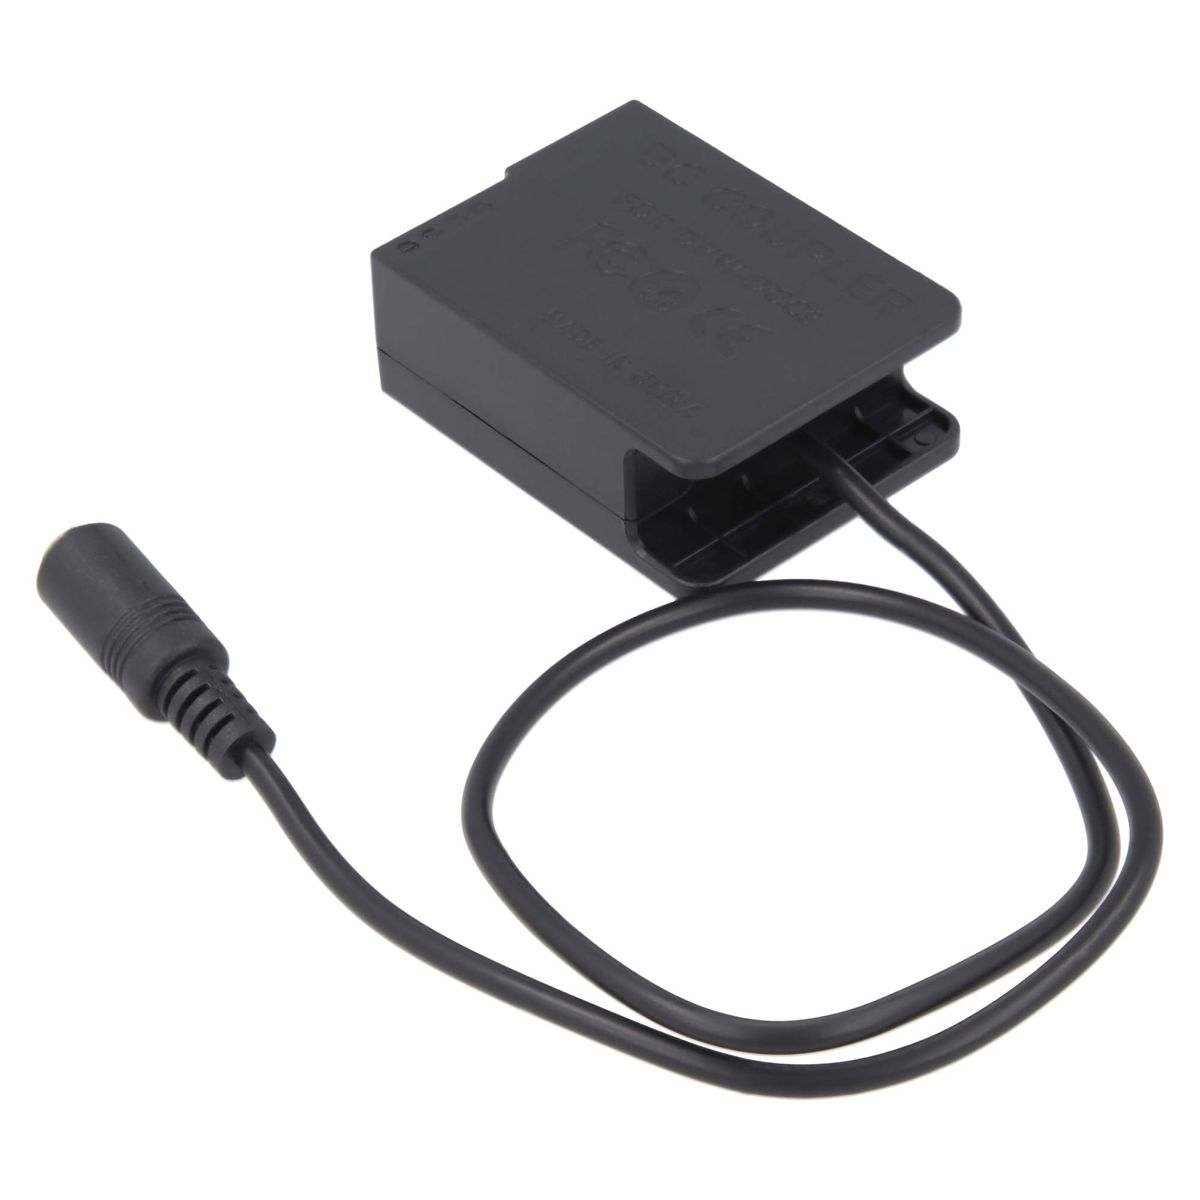 AKKU-KING USB-C Kuppler Ladegerät DCC8 Panasonic, Angabe mit Adapter + kompatibel keine Panasonic